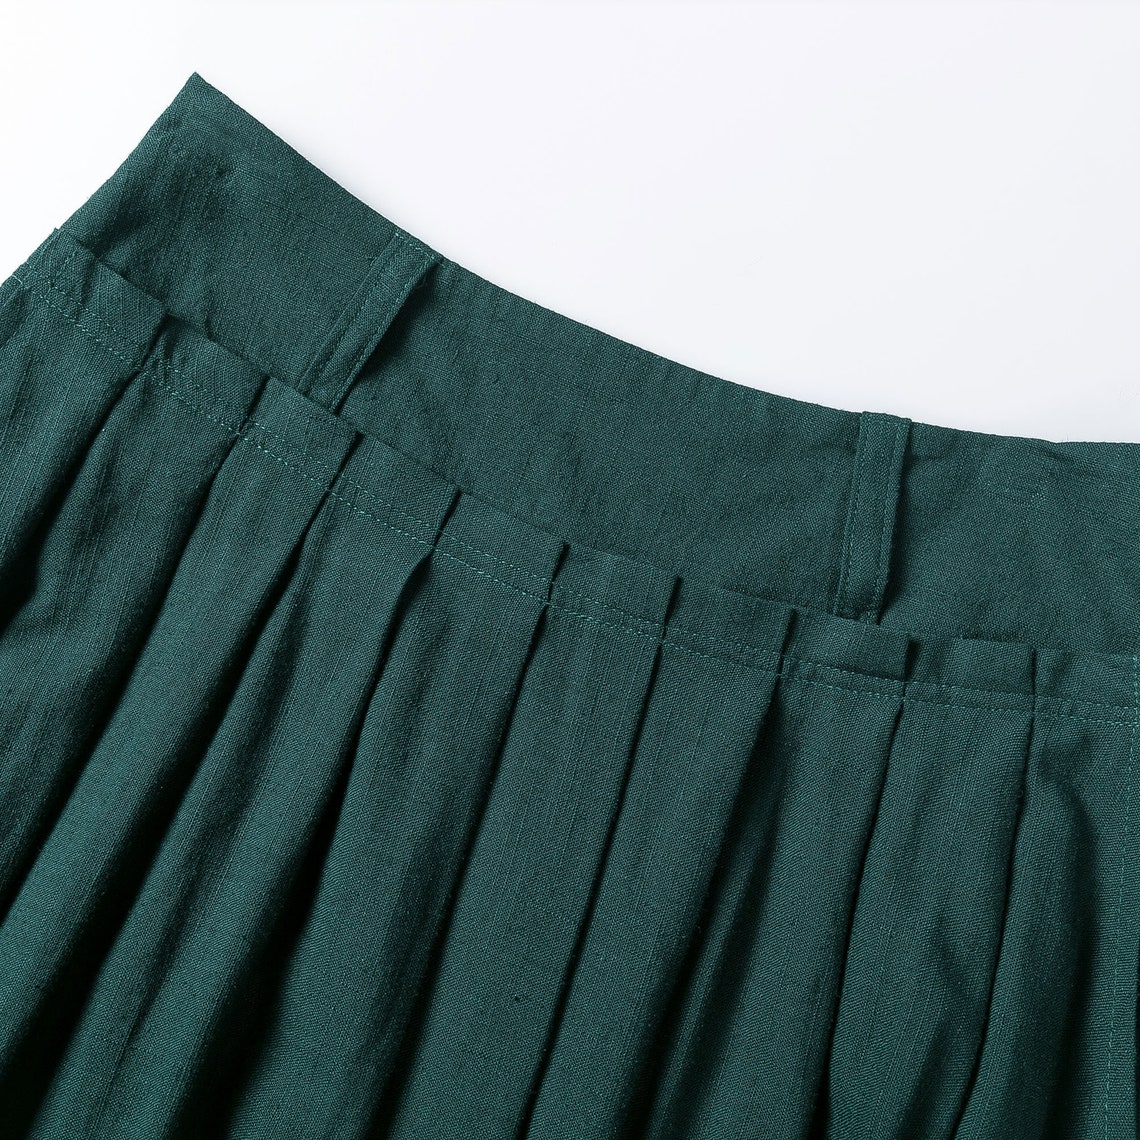 Long Maxi skirt work outfit Long Linen skirt High waist Long | Etsy